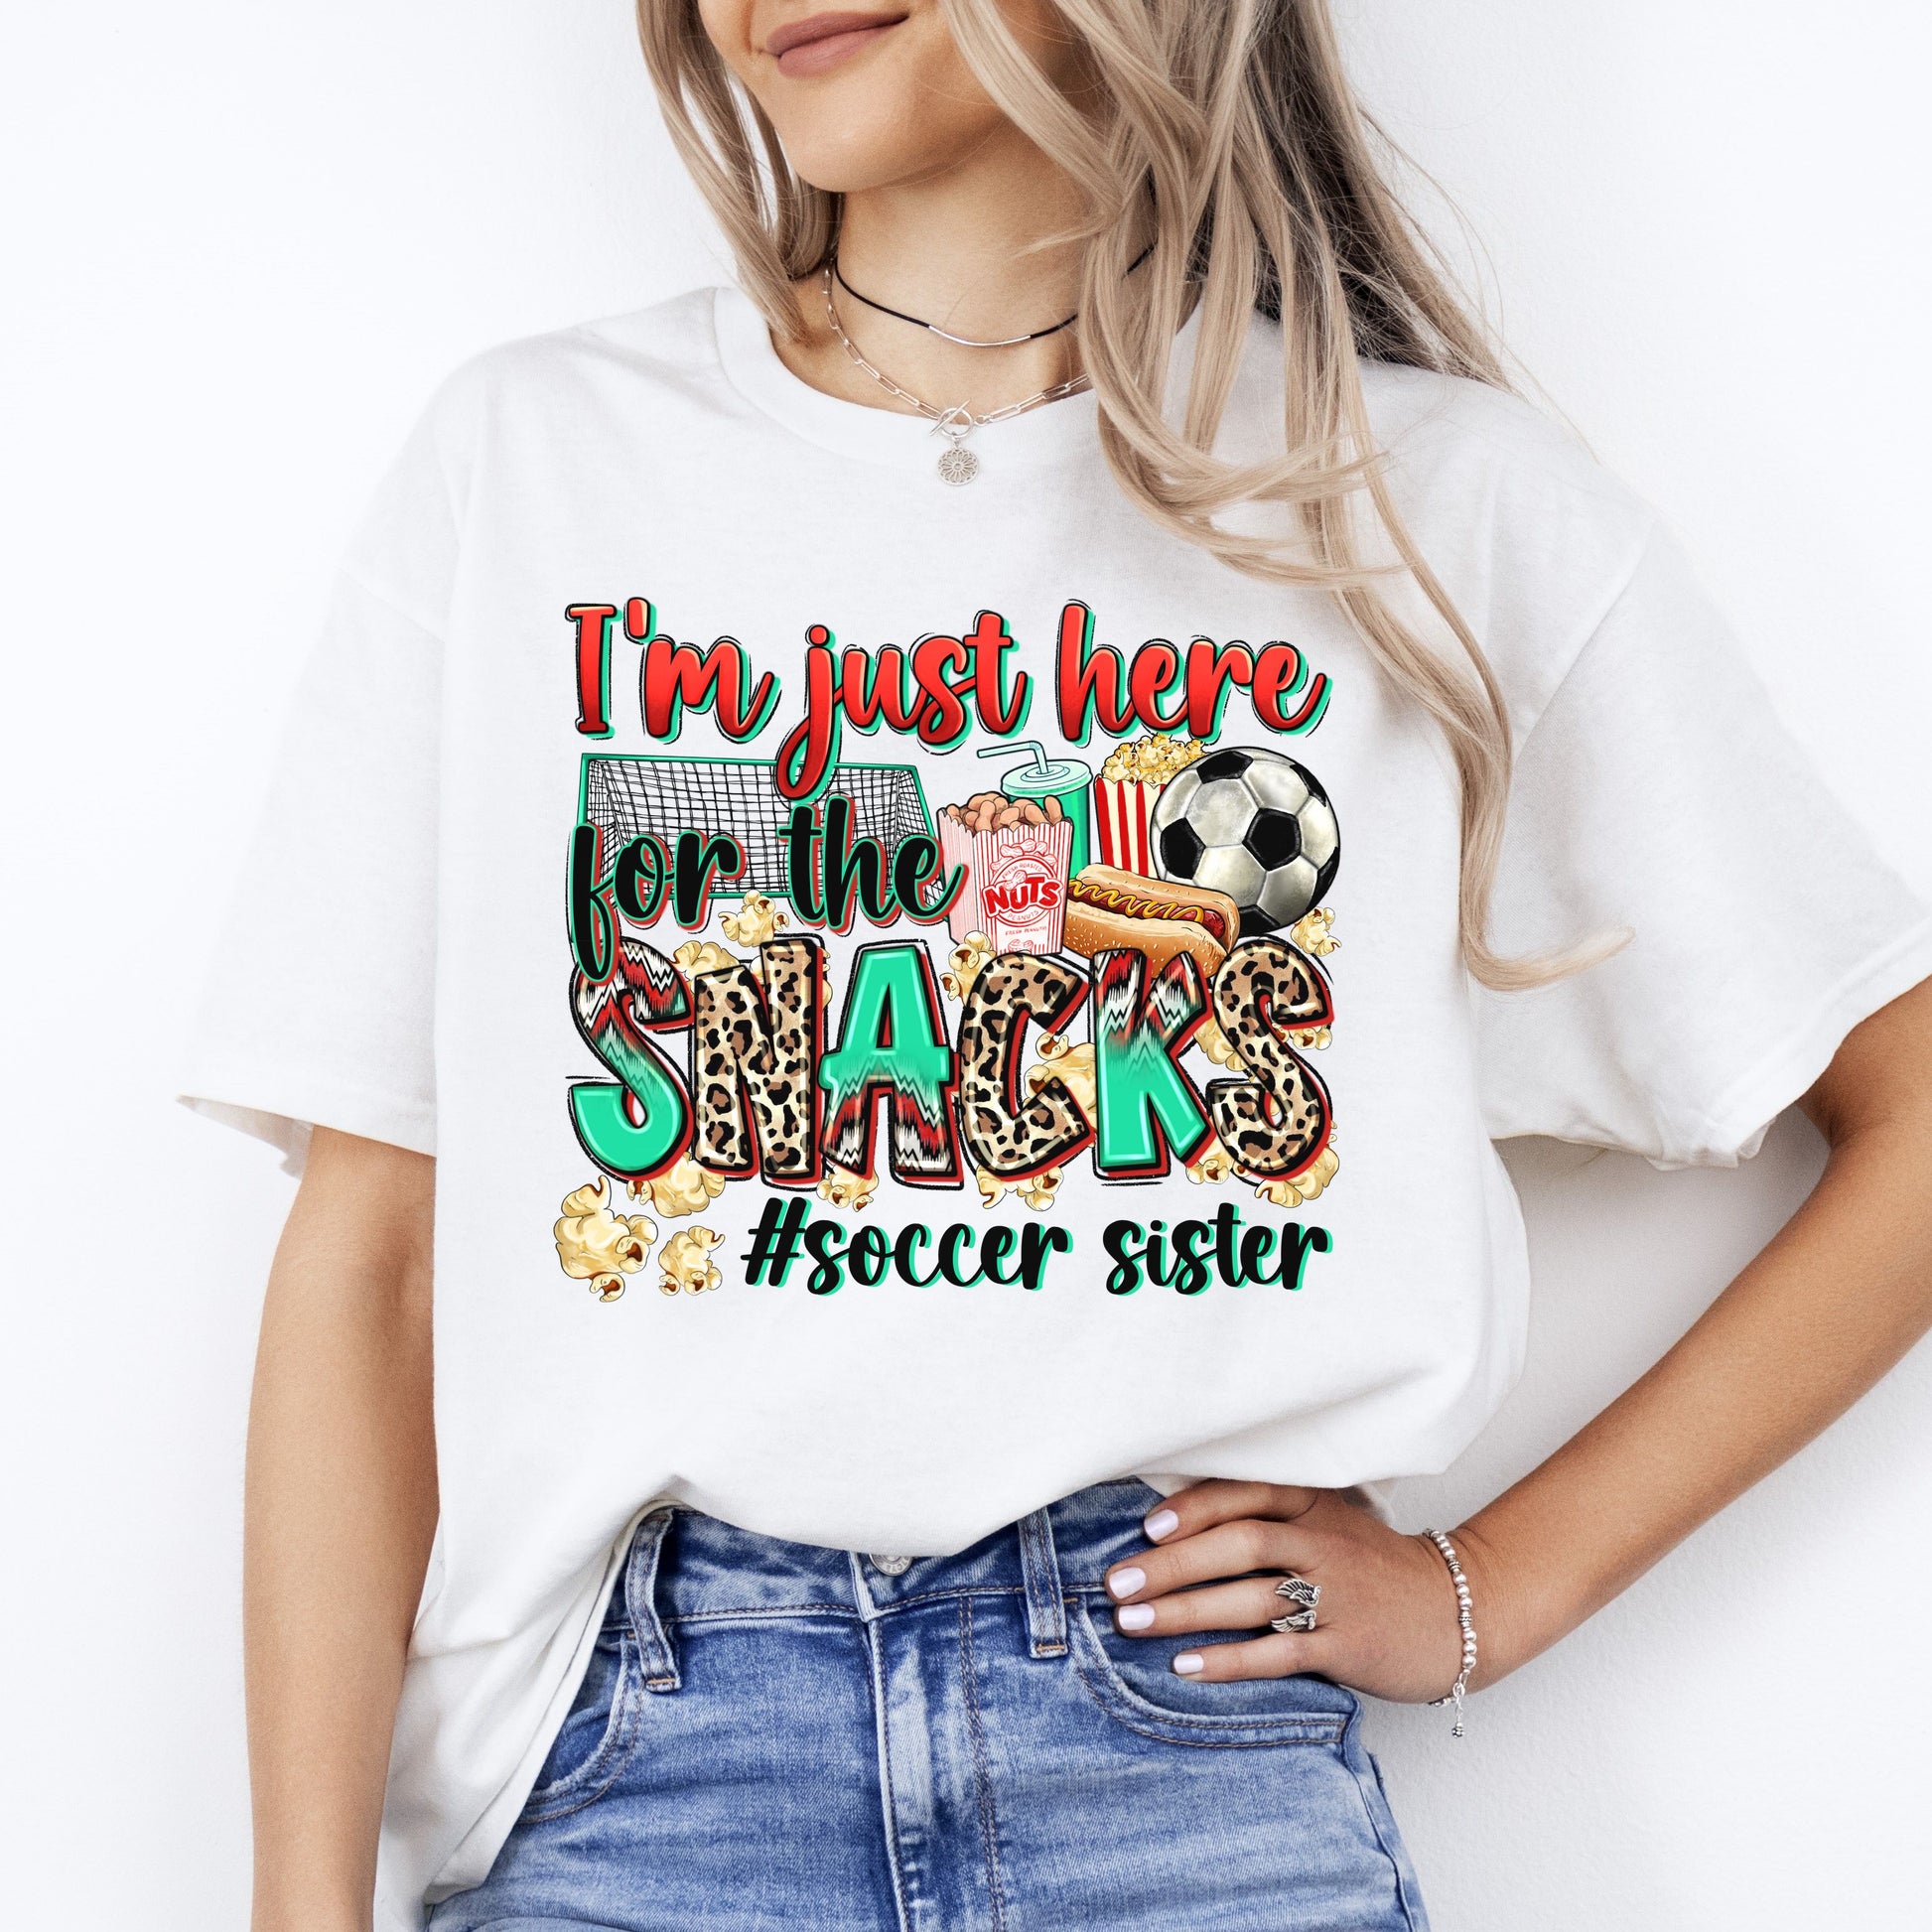 Soccer sister T-Shirt Soccer cheer I'm just here for the snacks Unisex Tee Sand White Sport Grey-White-Family-Gift-Planet